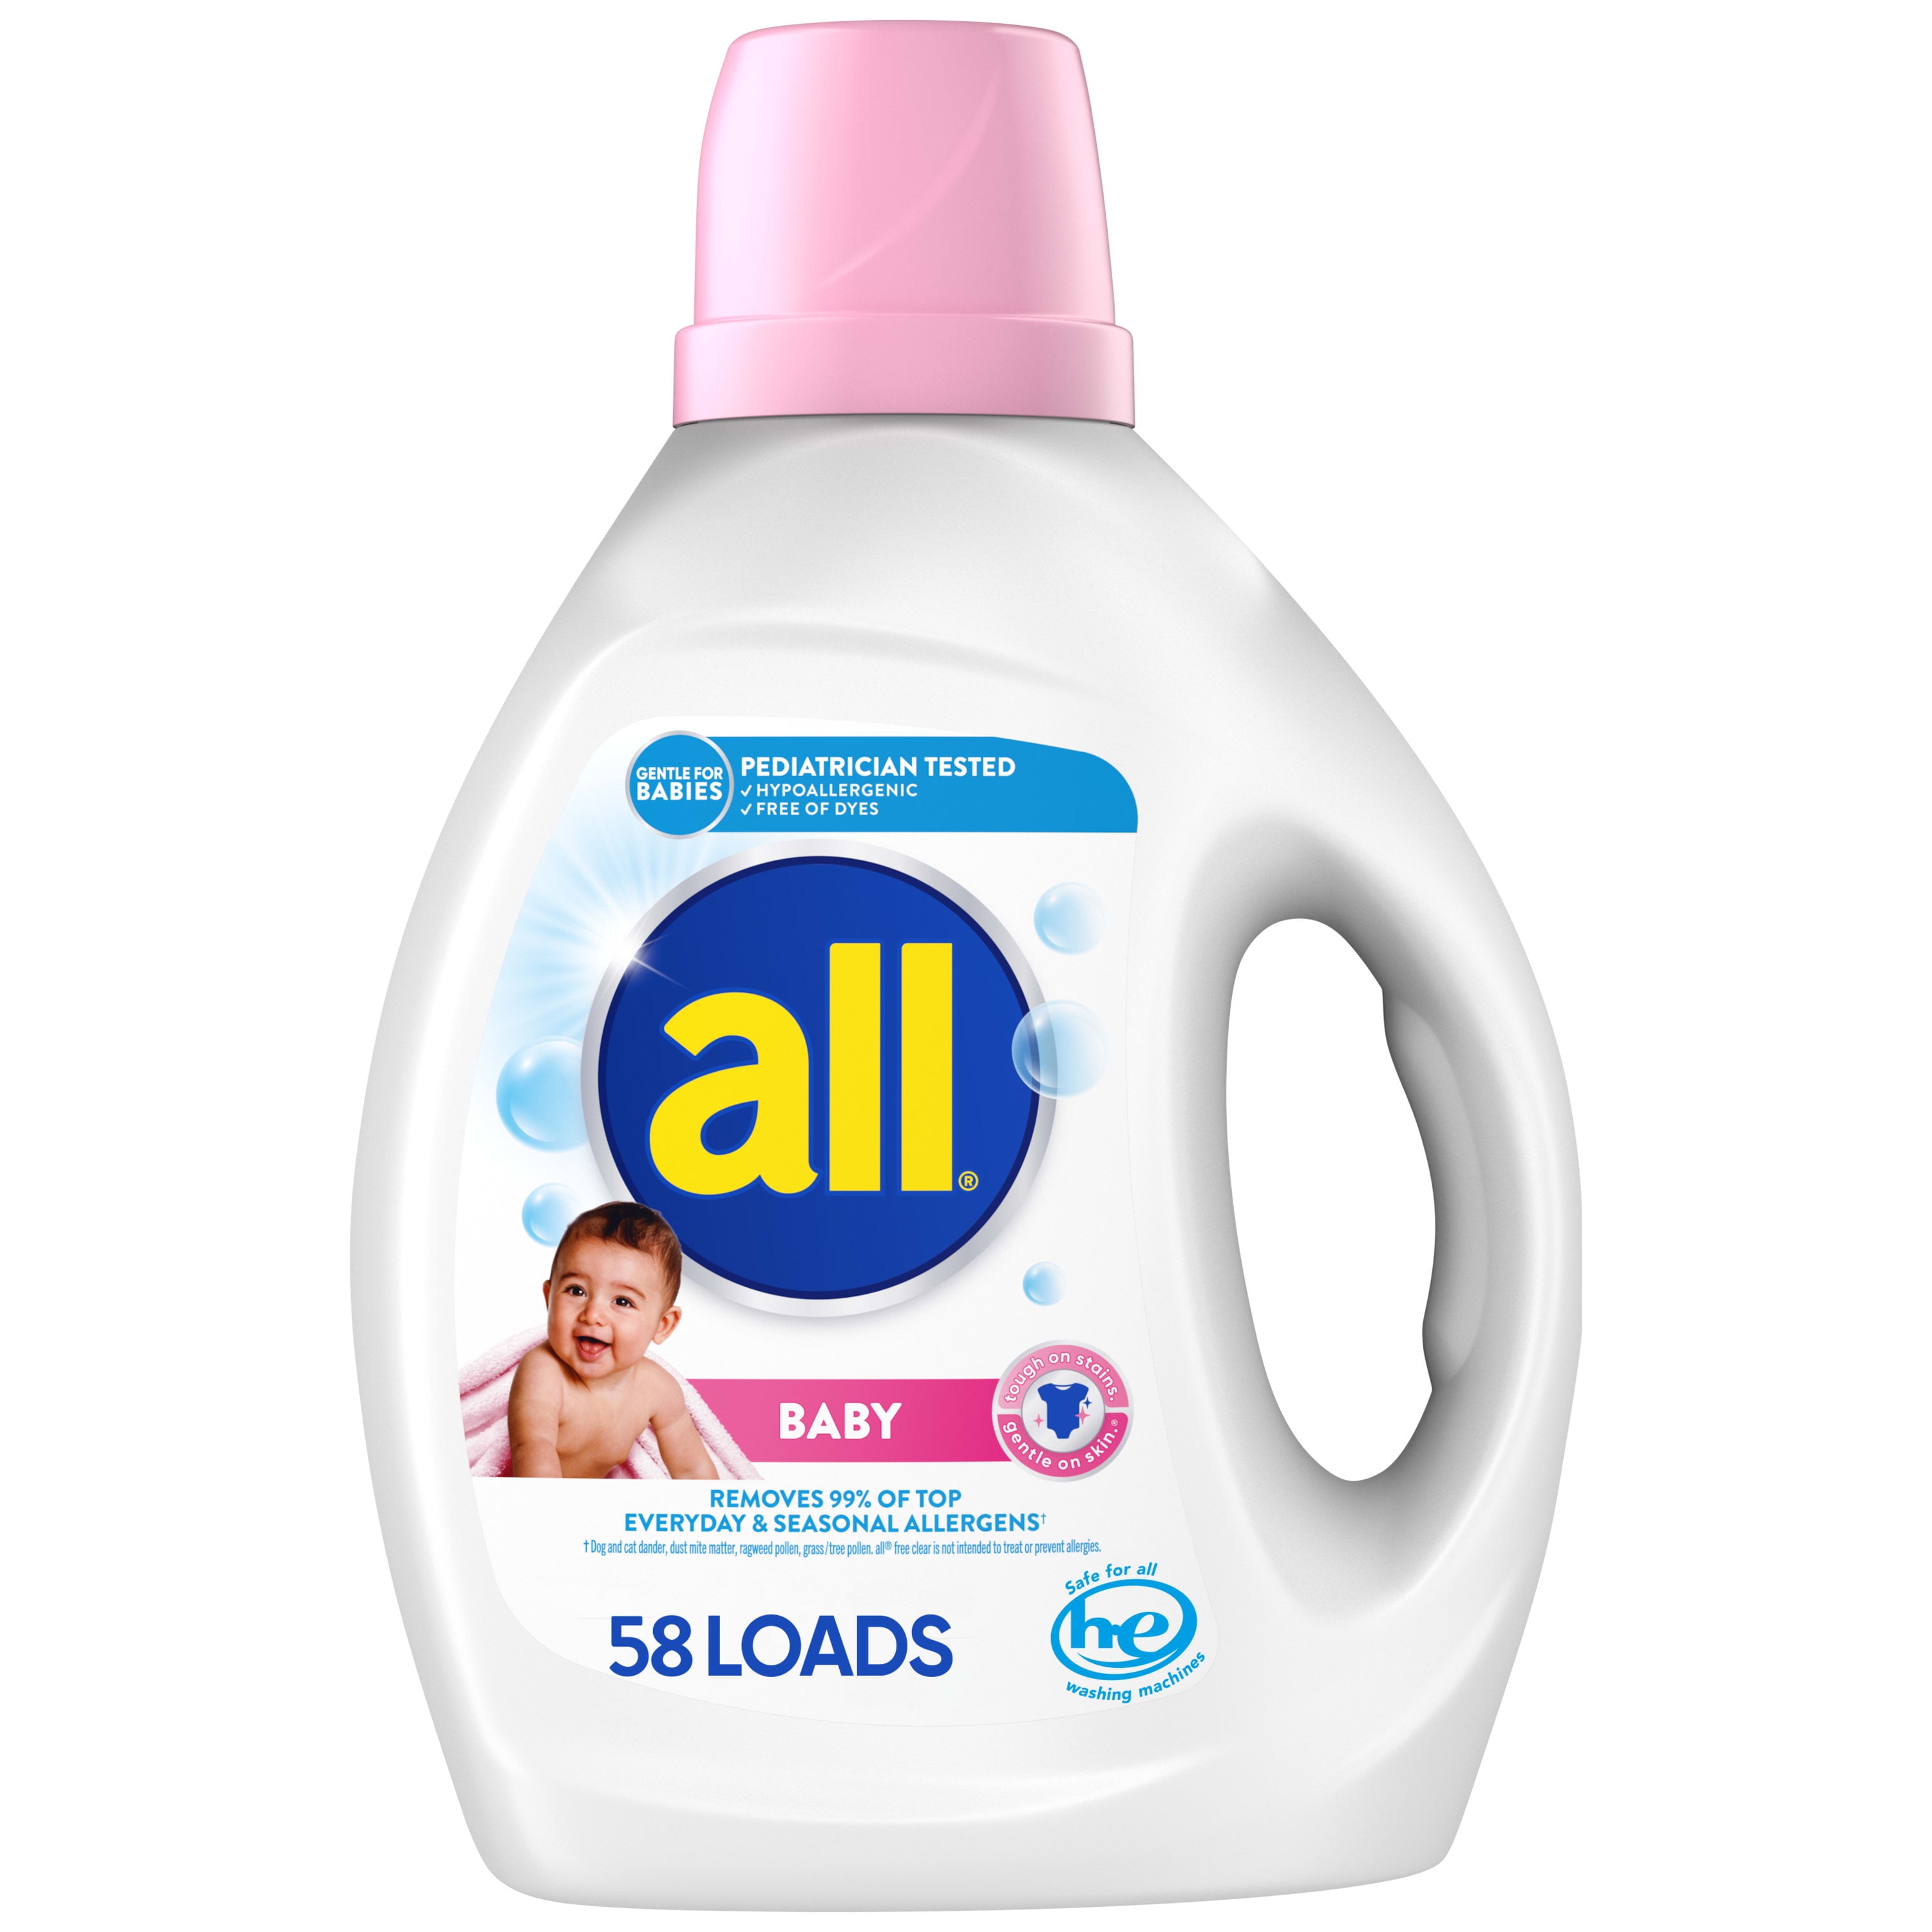 Dreft Pure Gentleness - Detergente líquido para bebé, sin fragancia, 46  onzas líquidas, paquete de 2